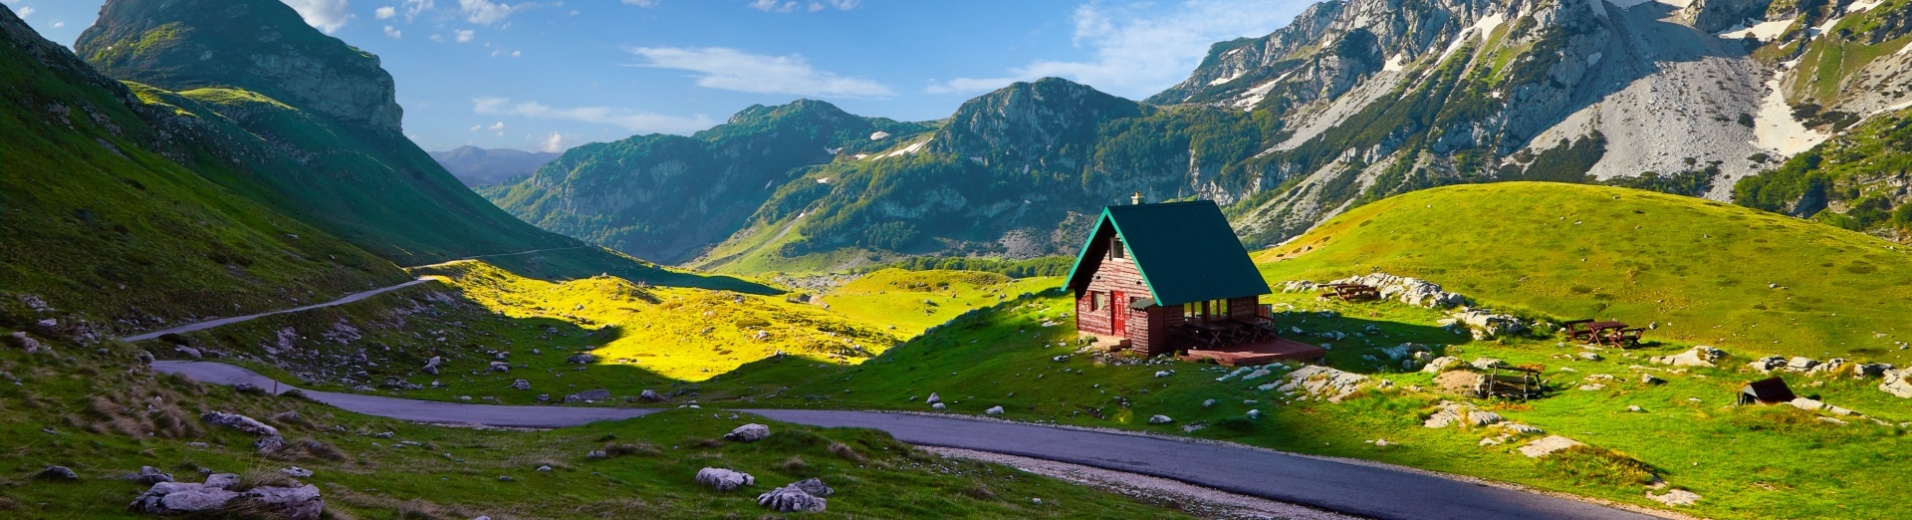 Route de montagne montenegro